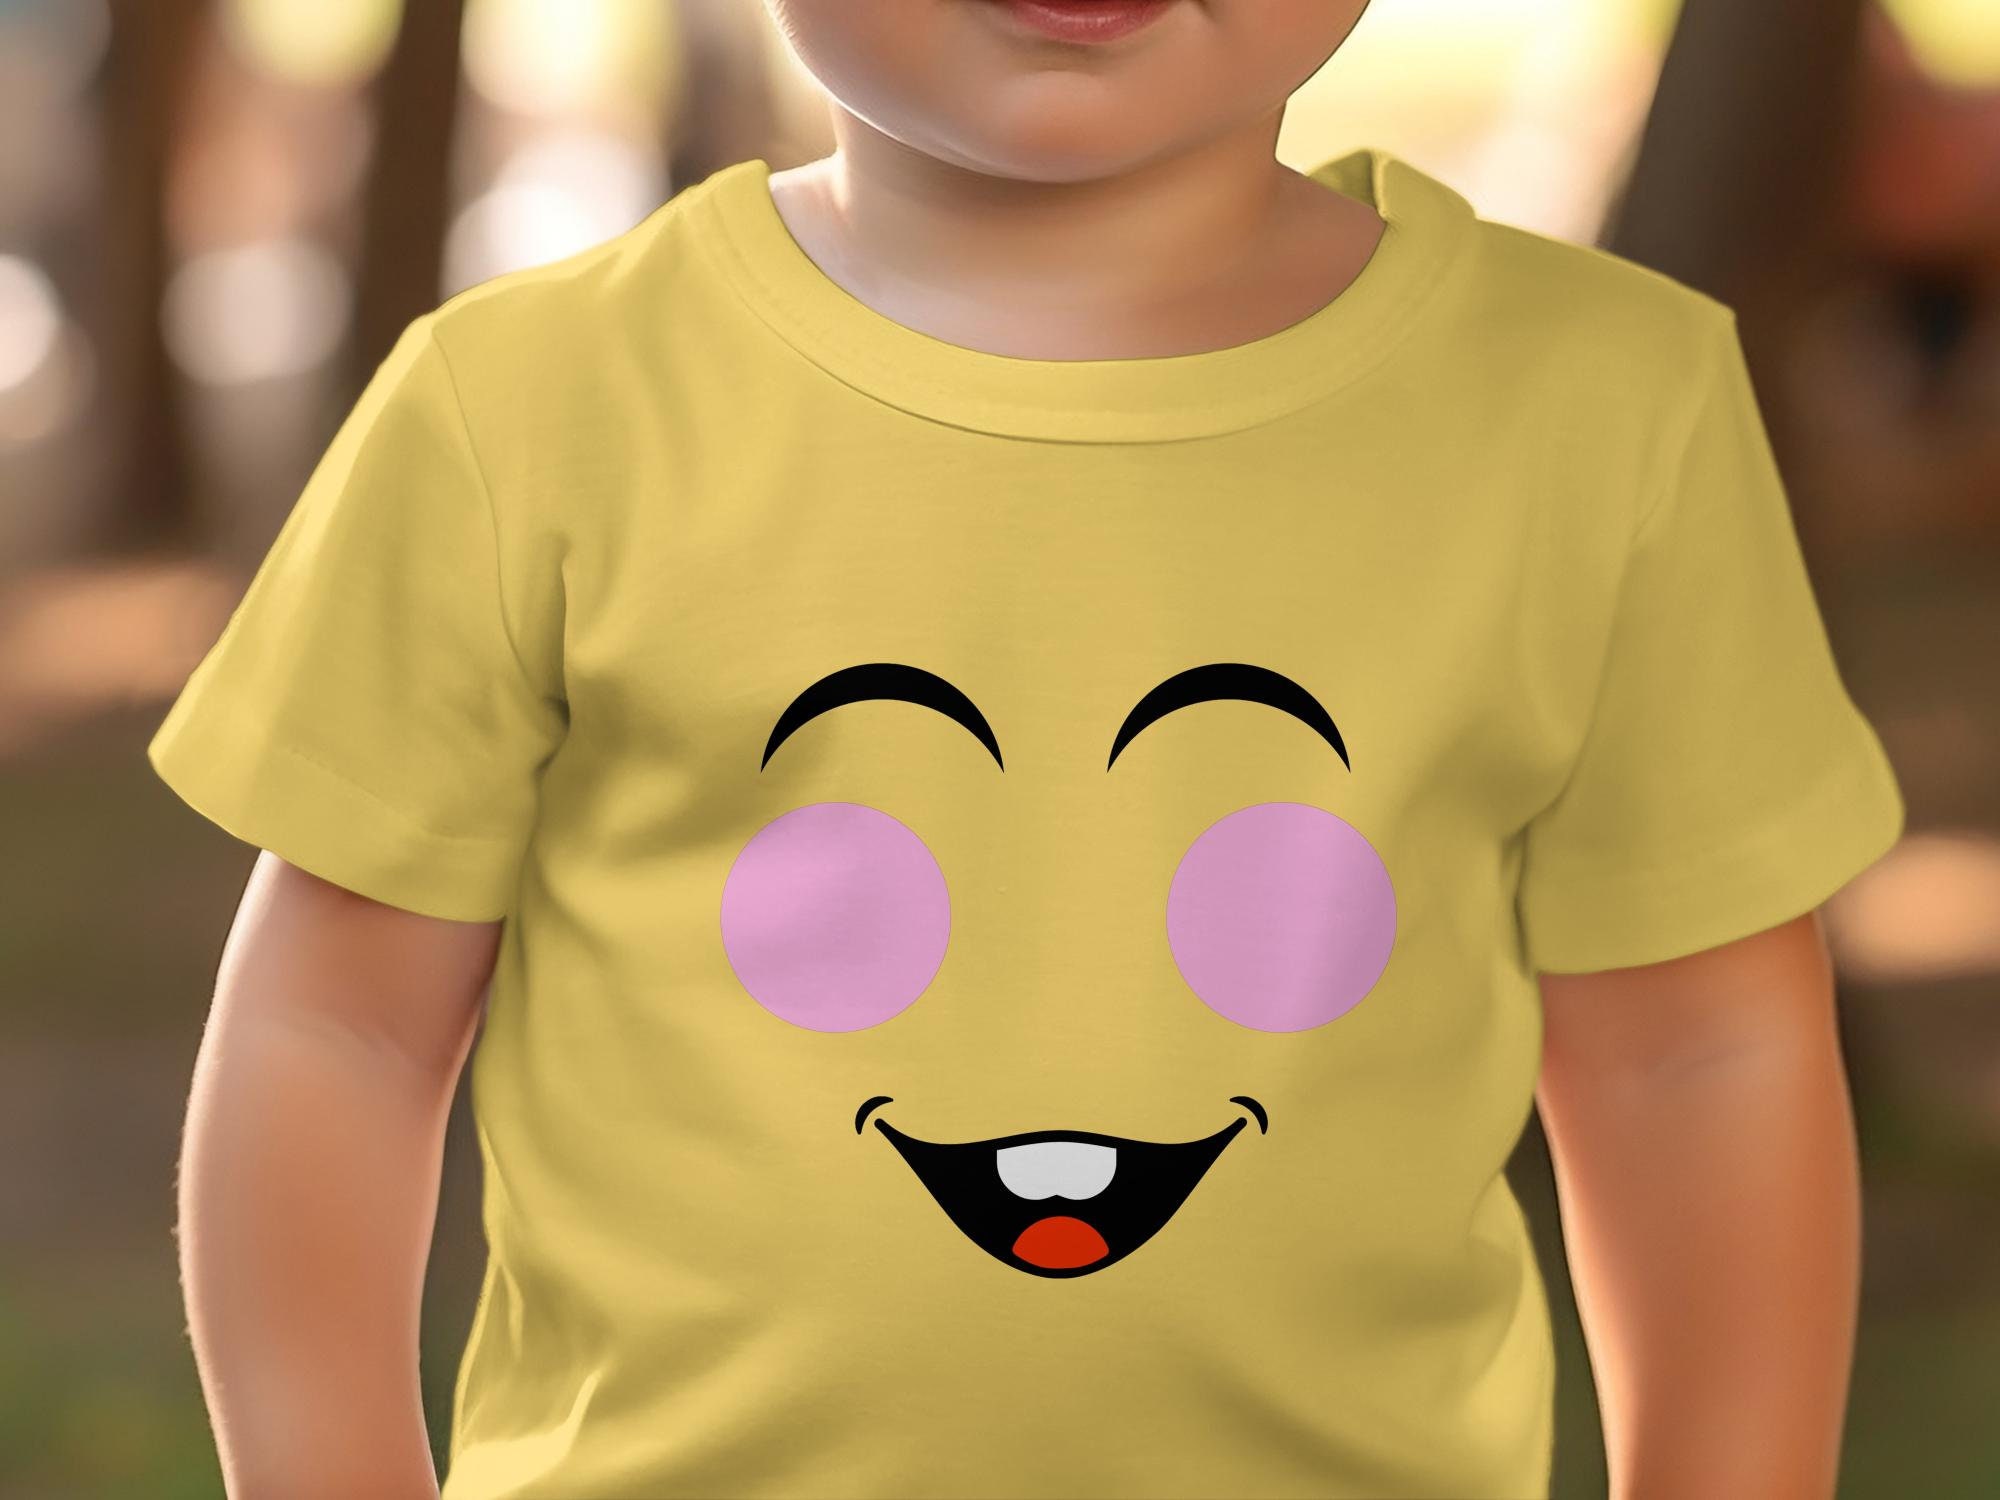 Foto De Stock Niño De Camiseta Amarilla Sonriente